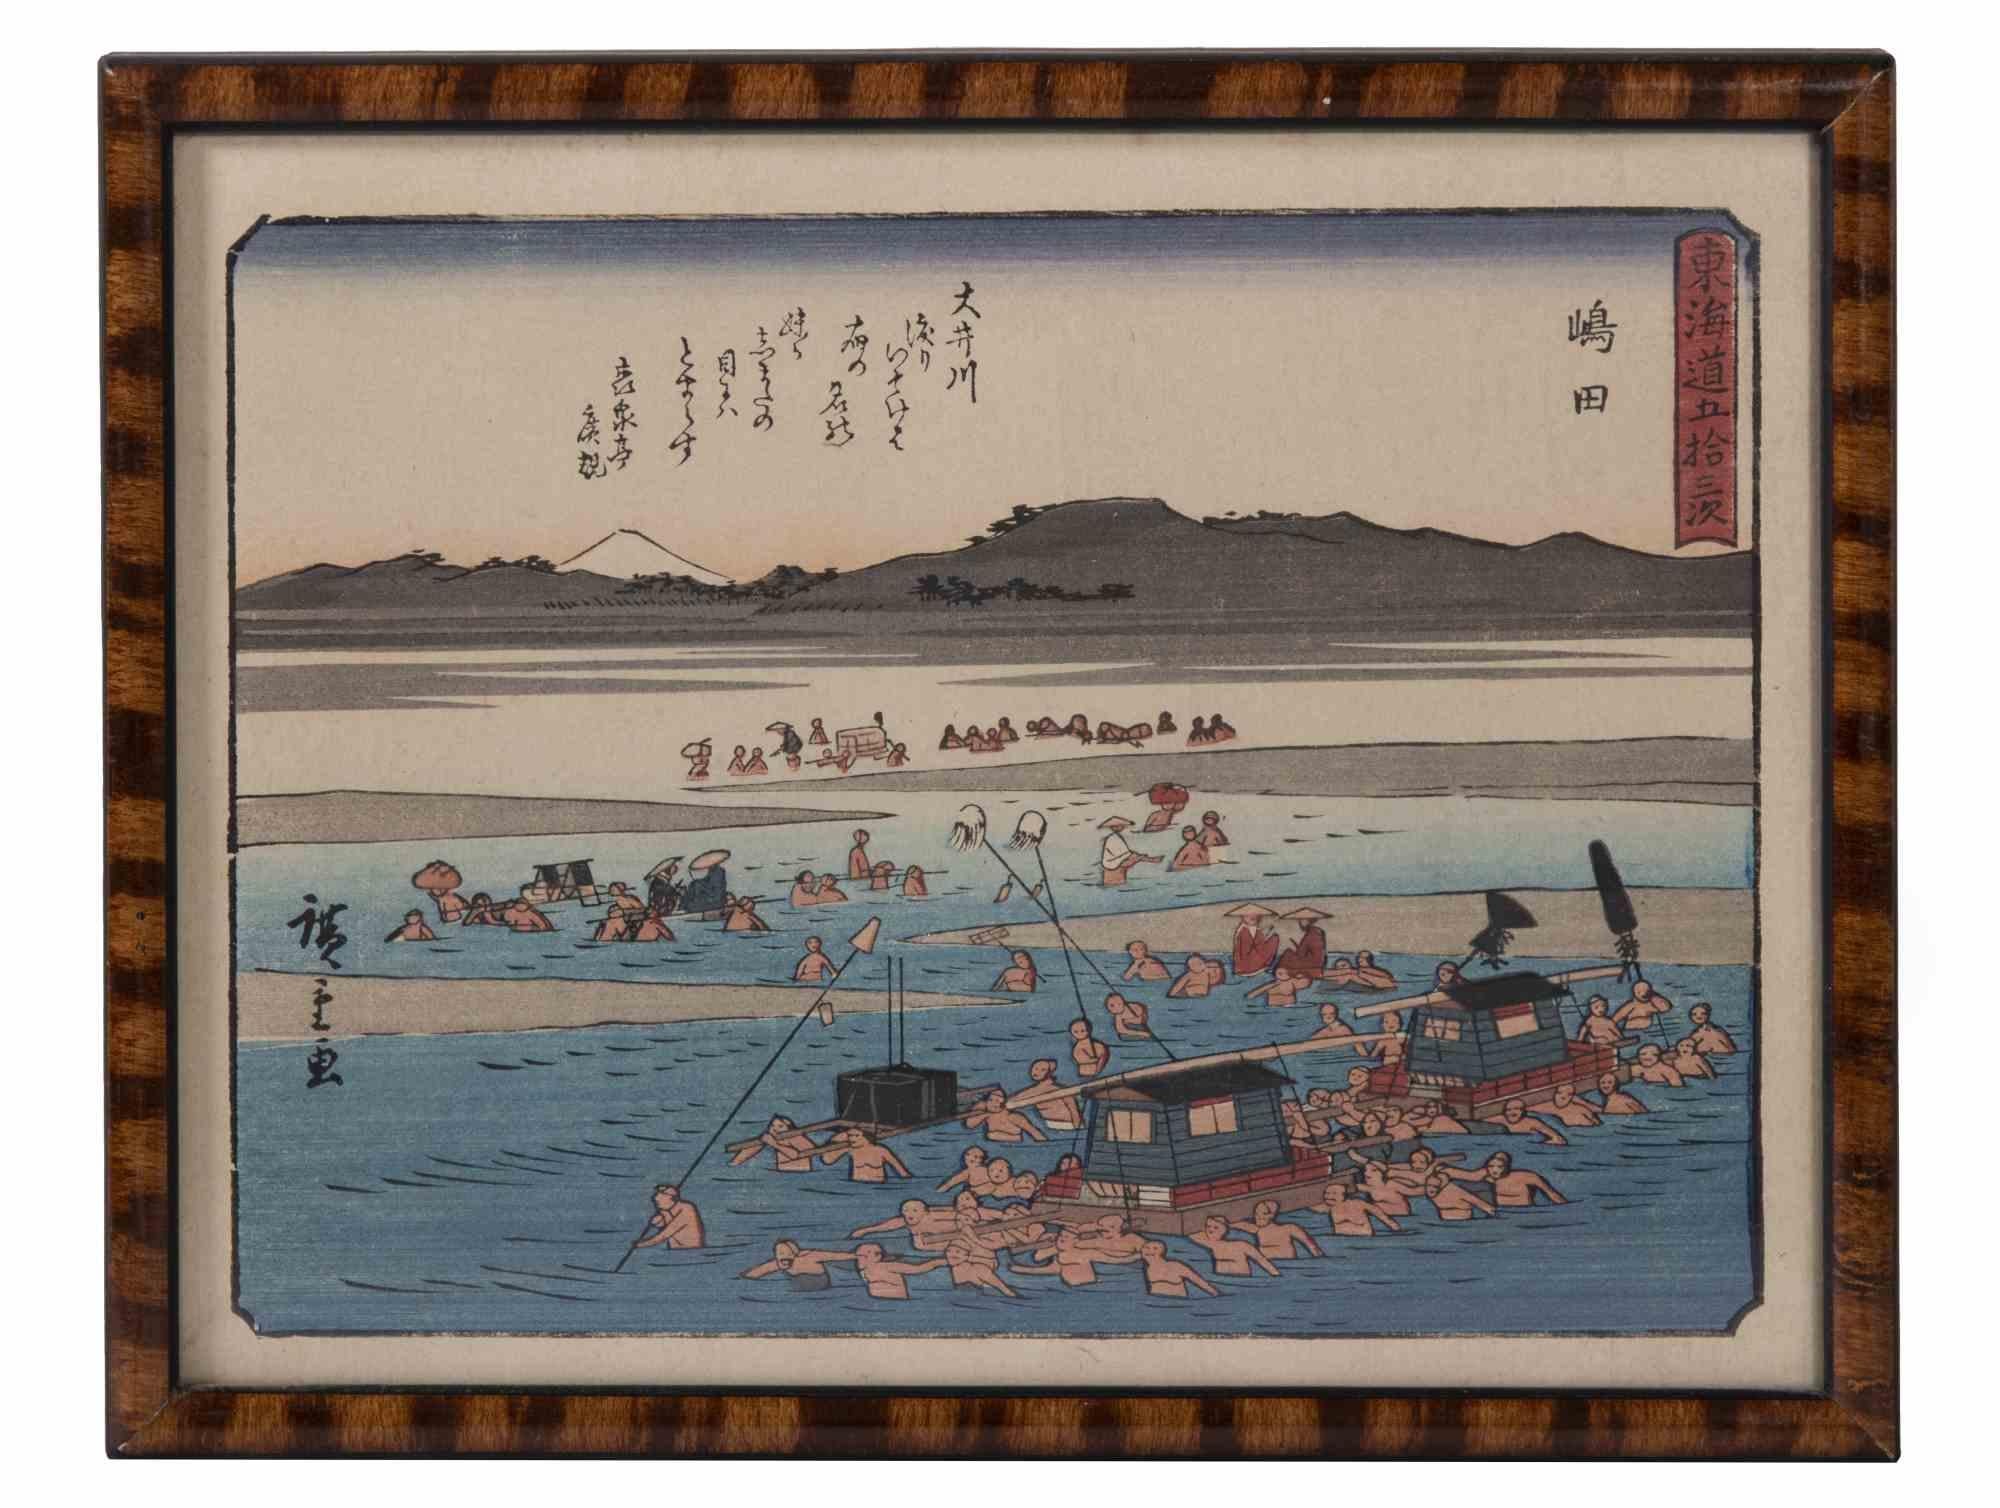 Shimada - Gravure sur bois d'après Utagawa Hiroshige - Fin du 19e siècle